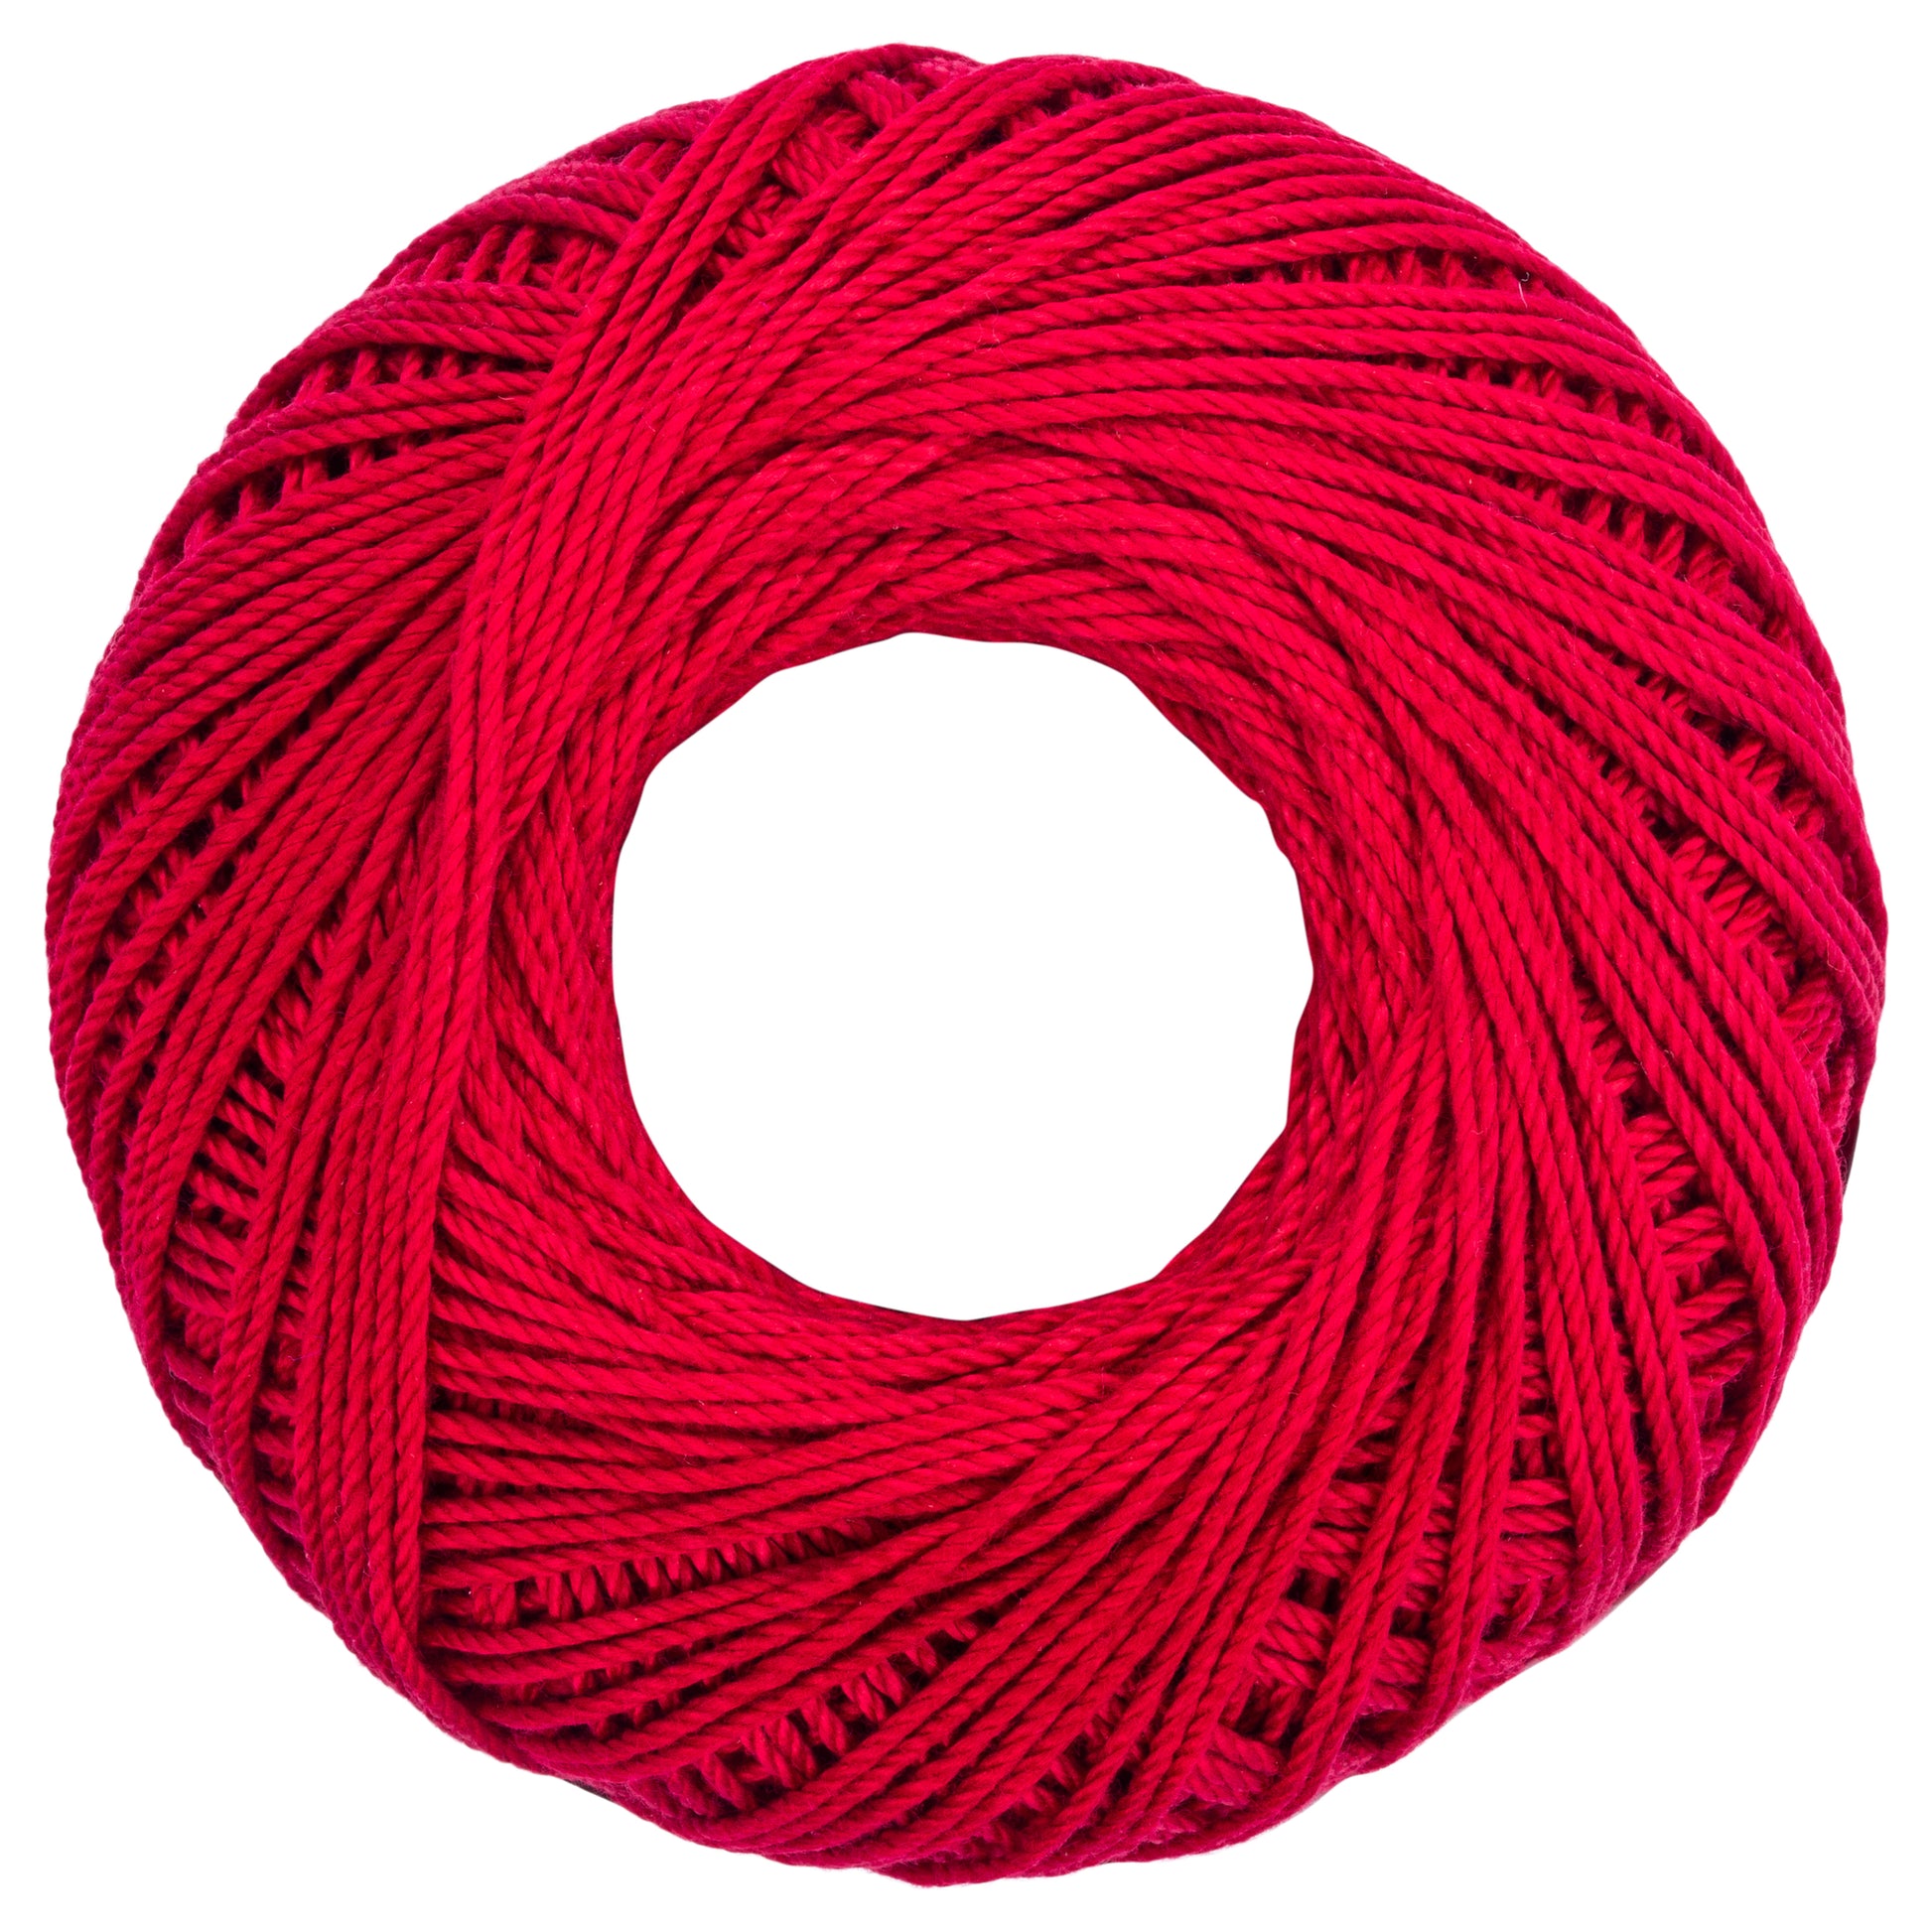 Aunt Lydia's Fashion Crochet Thread Size 3 Scarlet